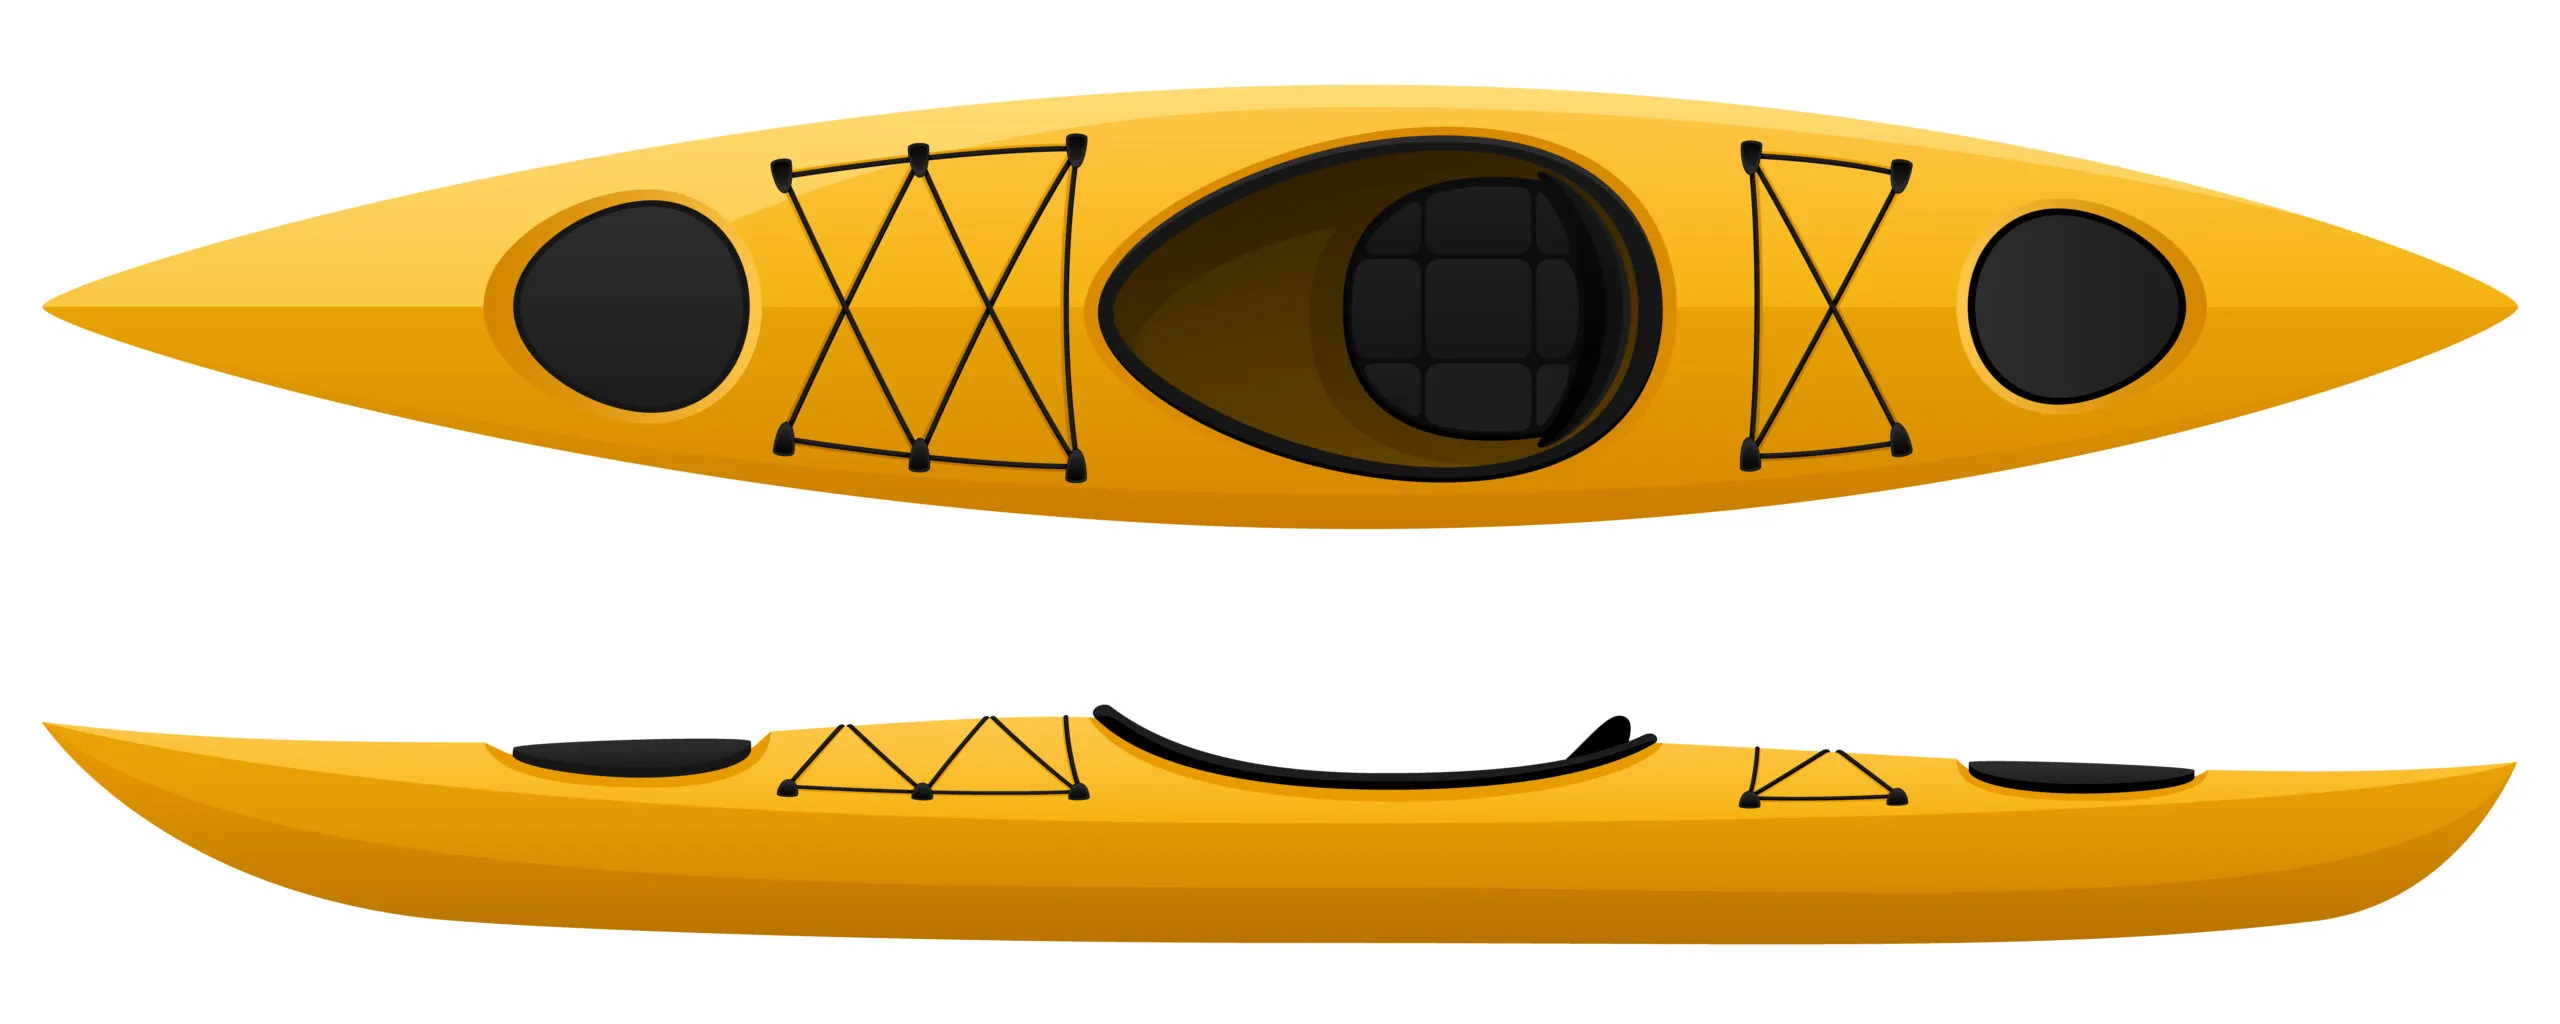 kayak shipping